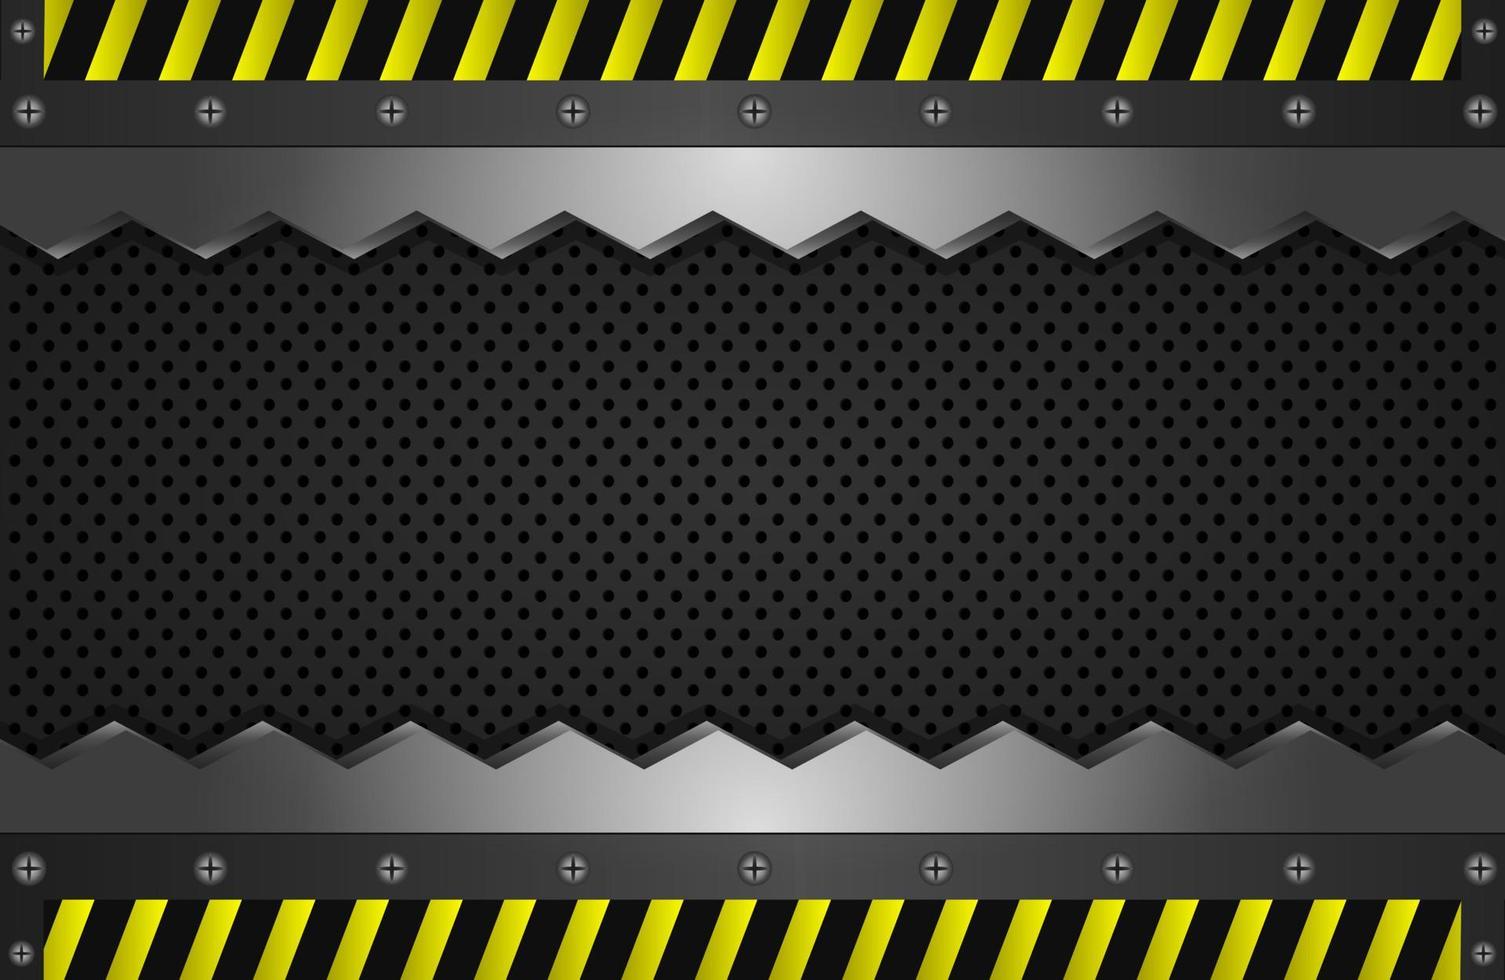 plantilla de fondo de metal en zigzag, chapa de hierro perforada, con señal de advertencia de línea amarilla, ilustración vectorial vector